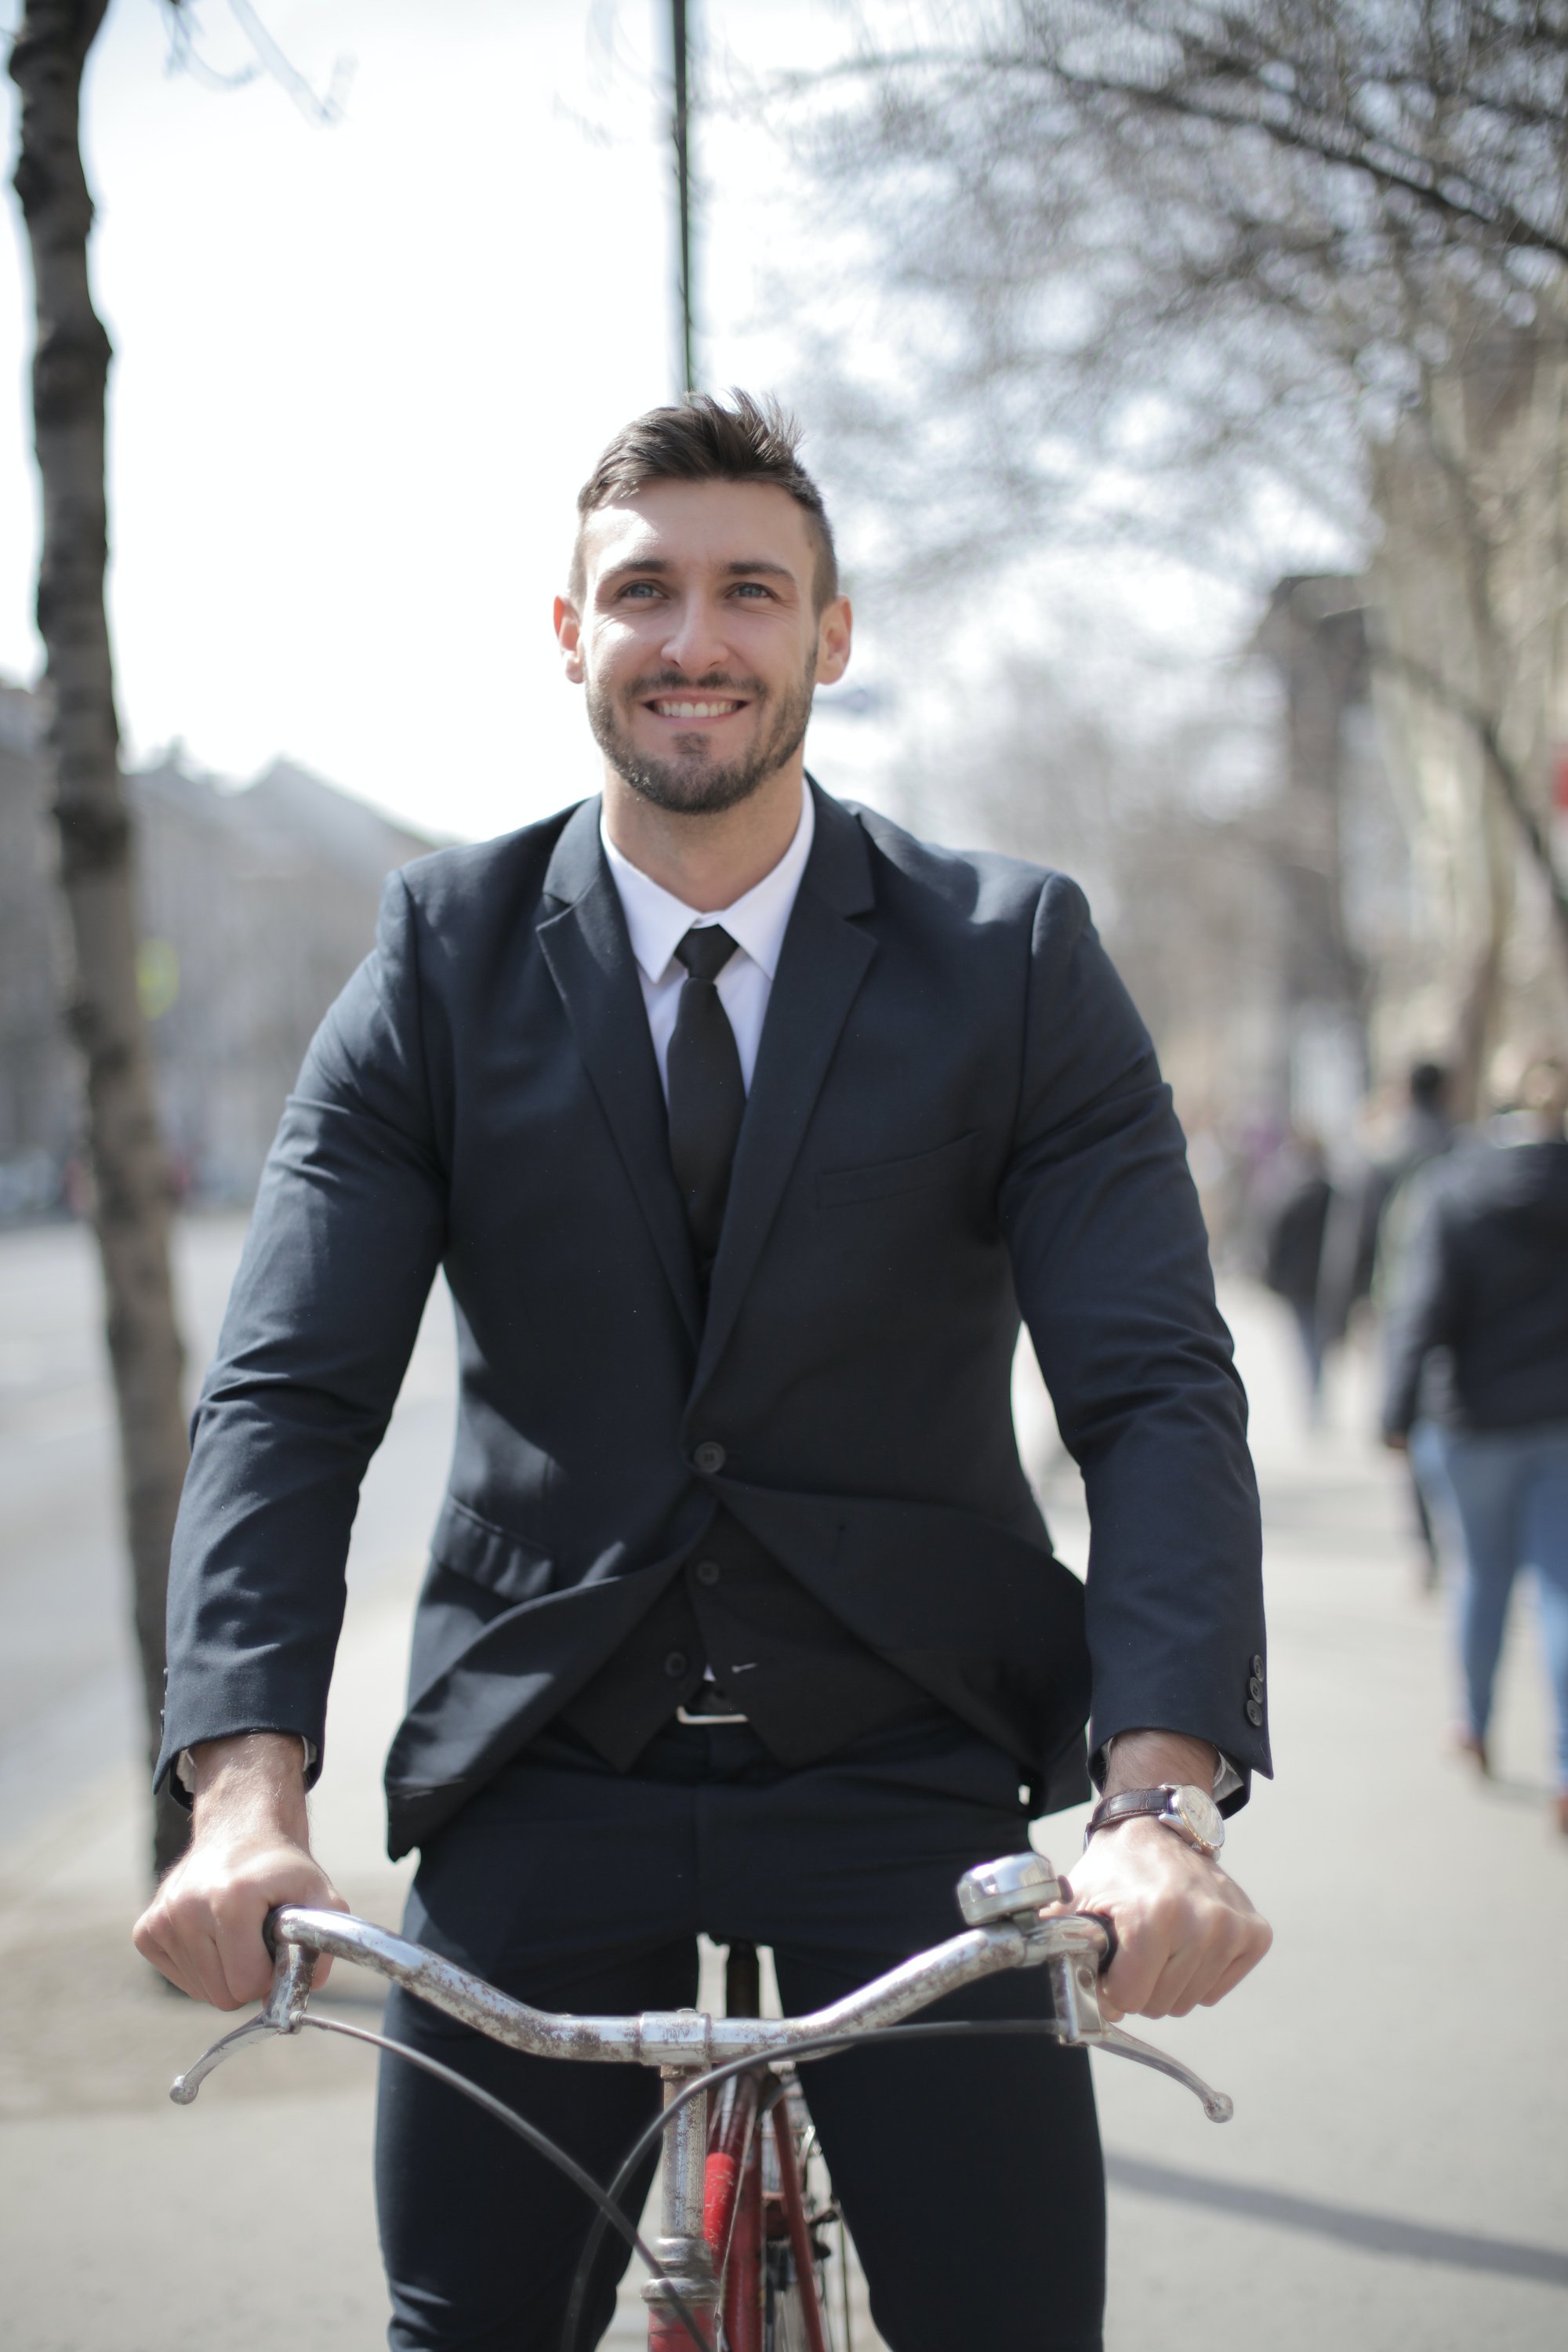 “Begin niet aan fietsleasing zonder degelijke voorstudie”